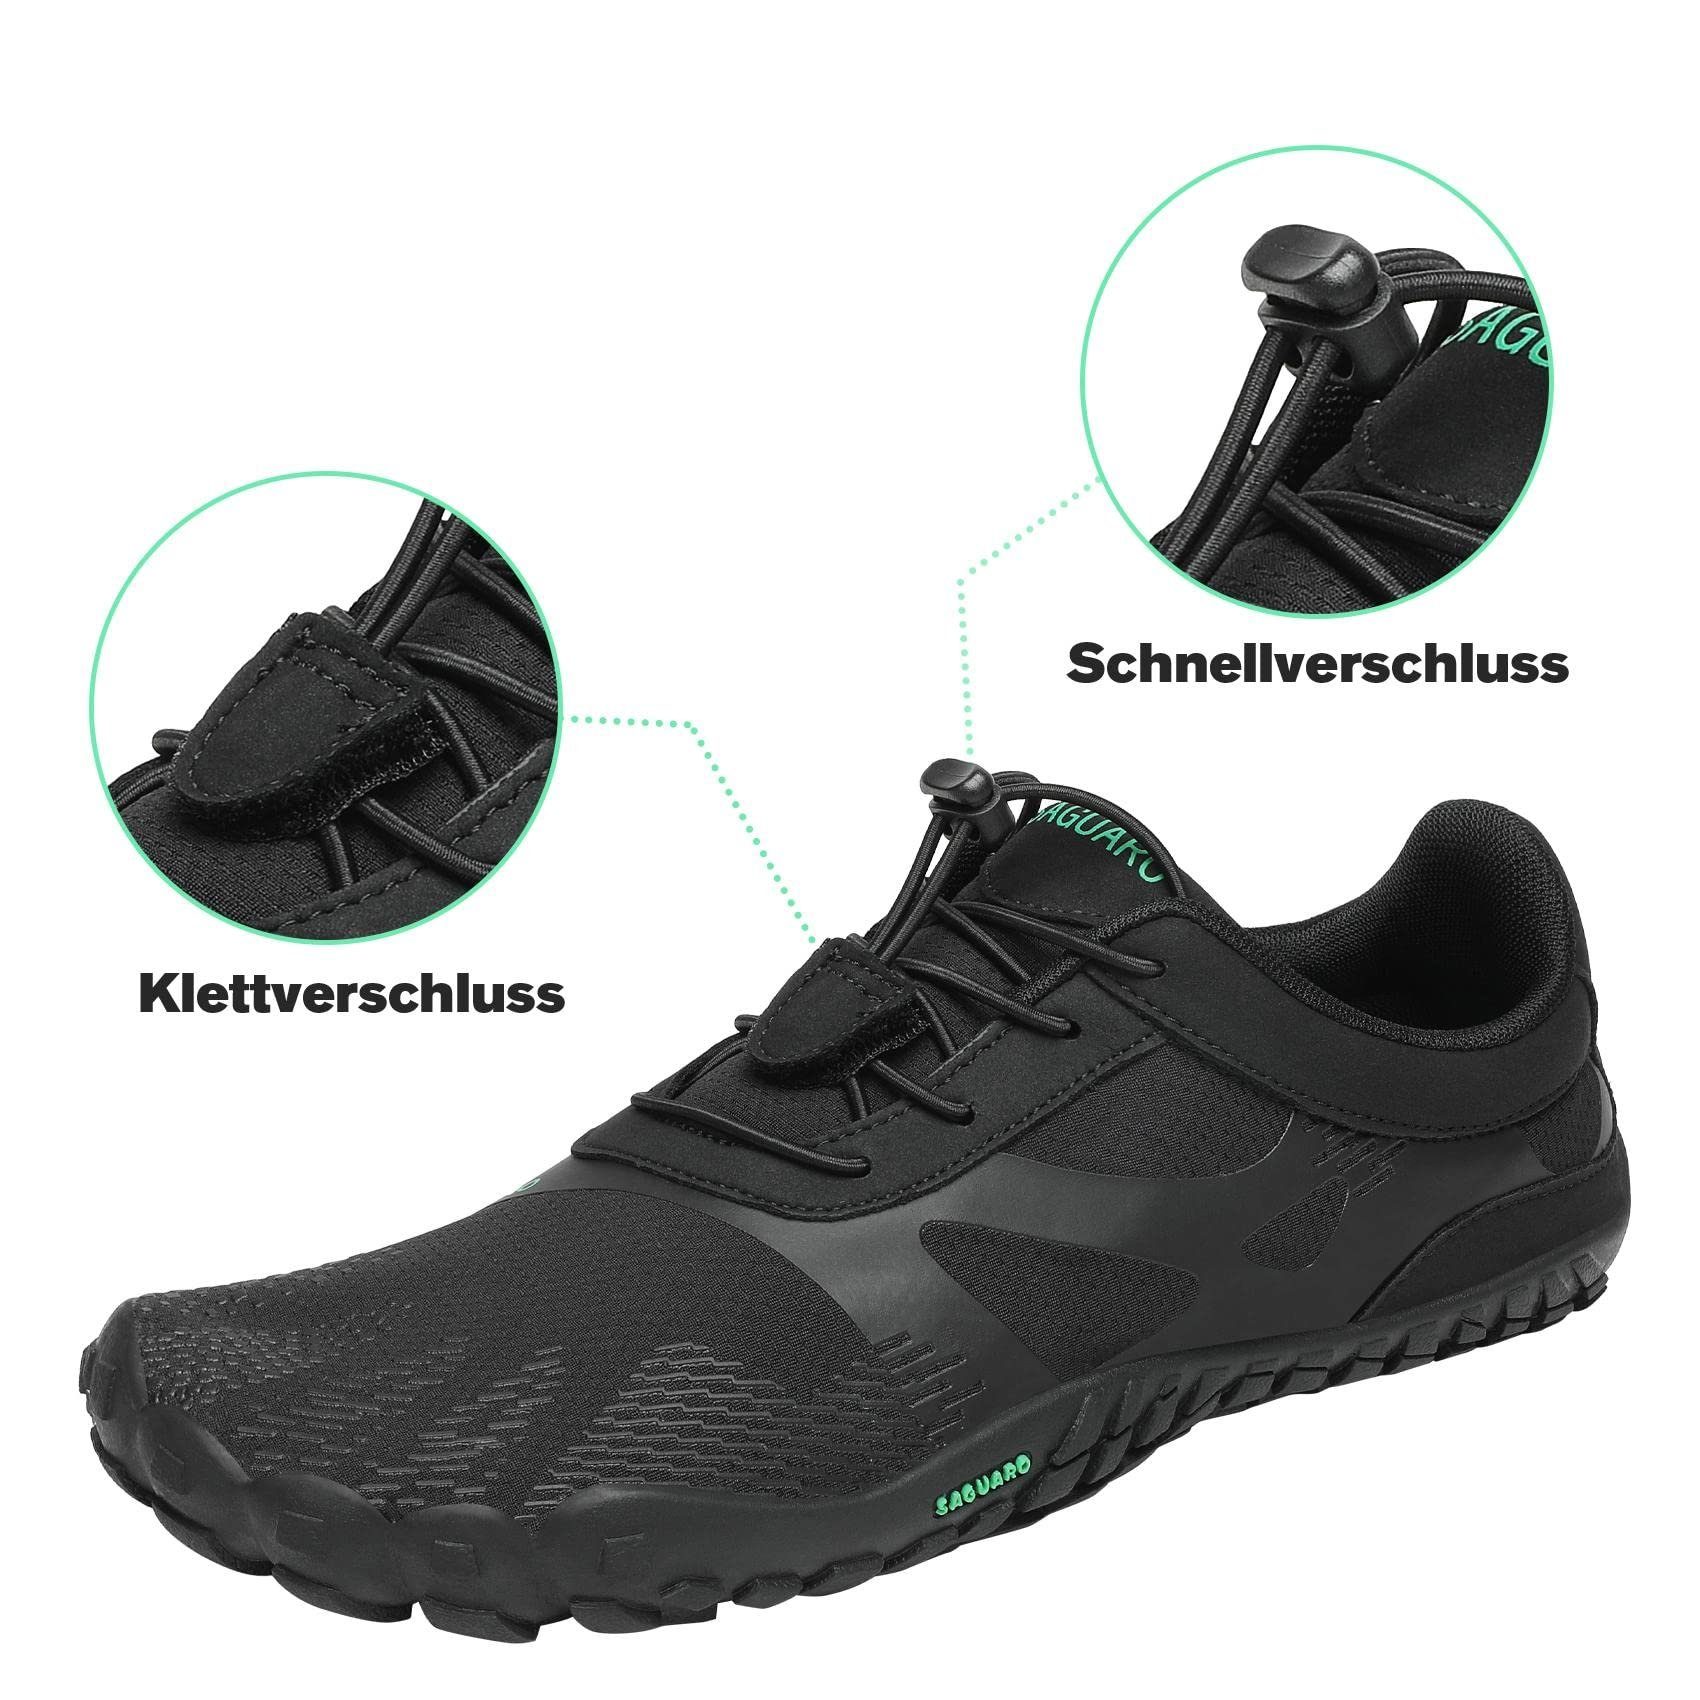 SAGUARO Barfußschuh (bequem, leicht, atmungsaktiv, Sneaker Minimalschuhe Laufschuhe Schwarz Trail-Running rutschfest) Jogging 054 Sport-Schuhe